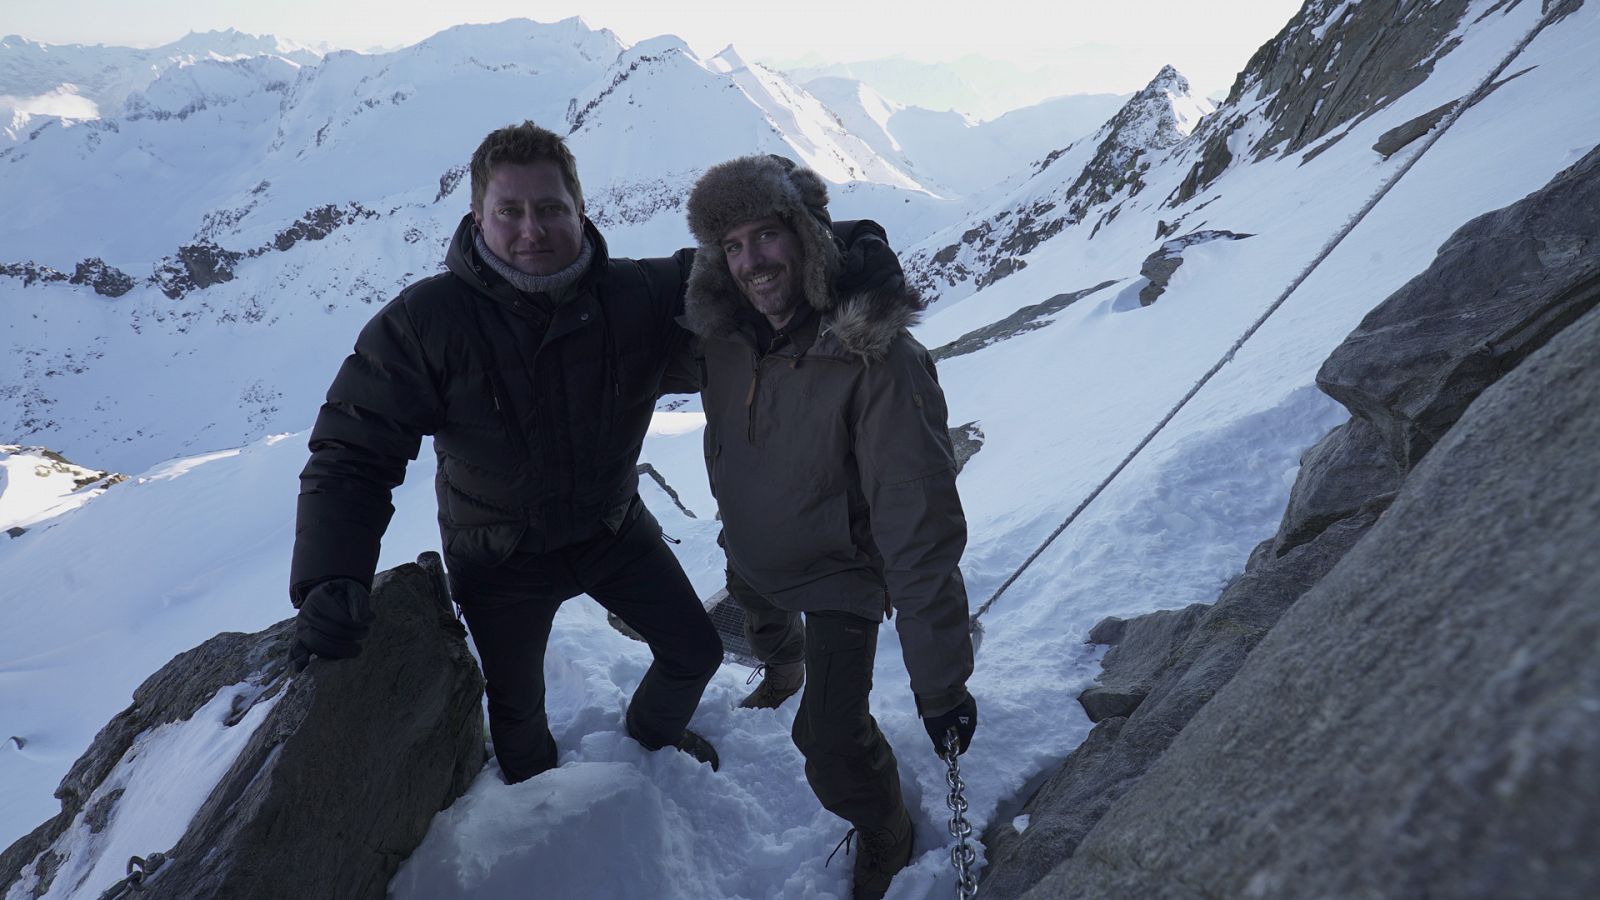 Espacios increíbles: Especial hielo y nieve - Episodio 3: Los Alpes - Documental en RTVE